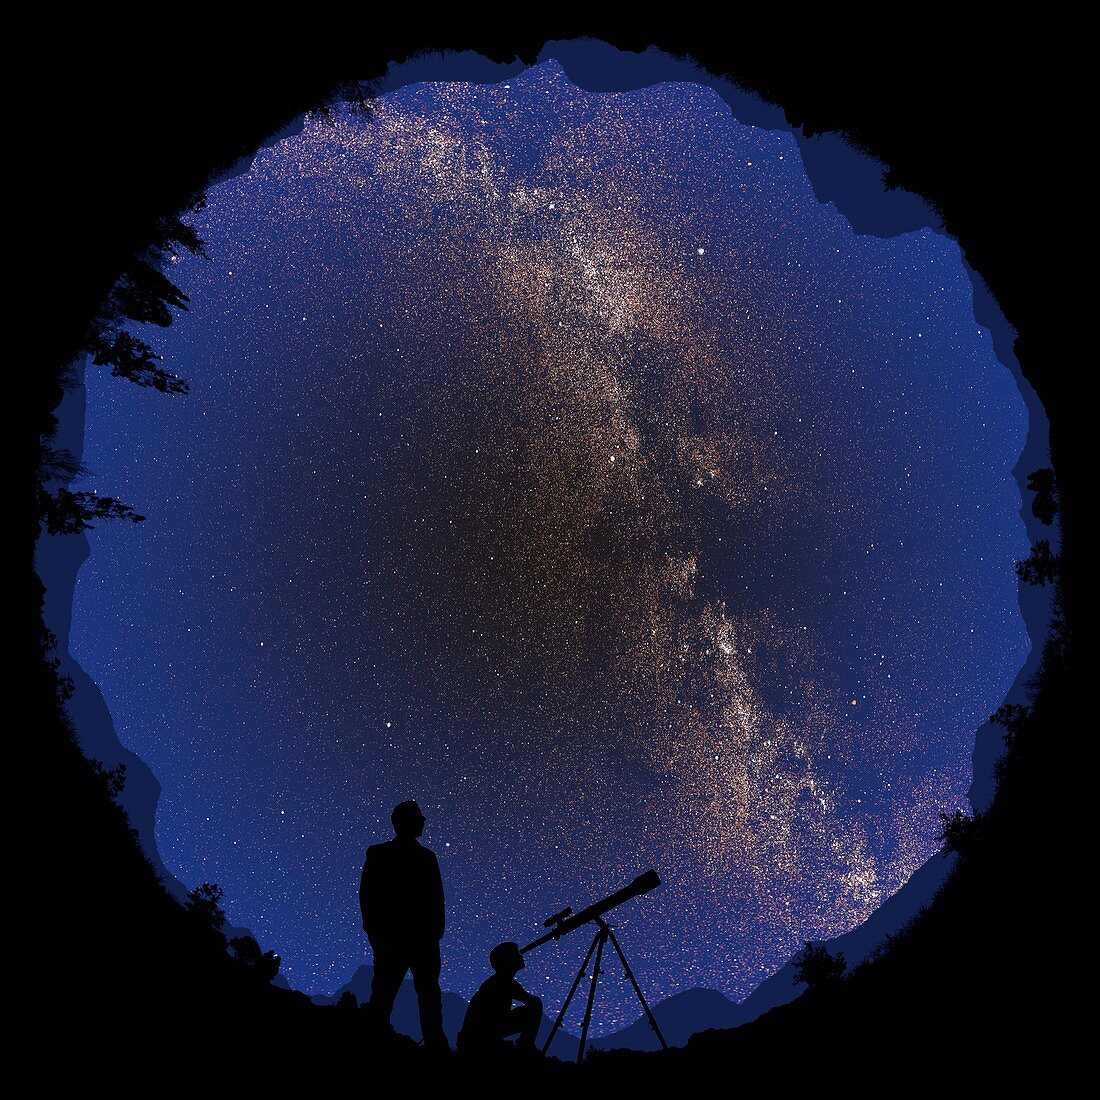 360 degree night sky, illustration